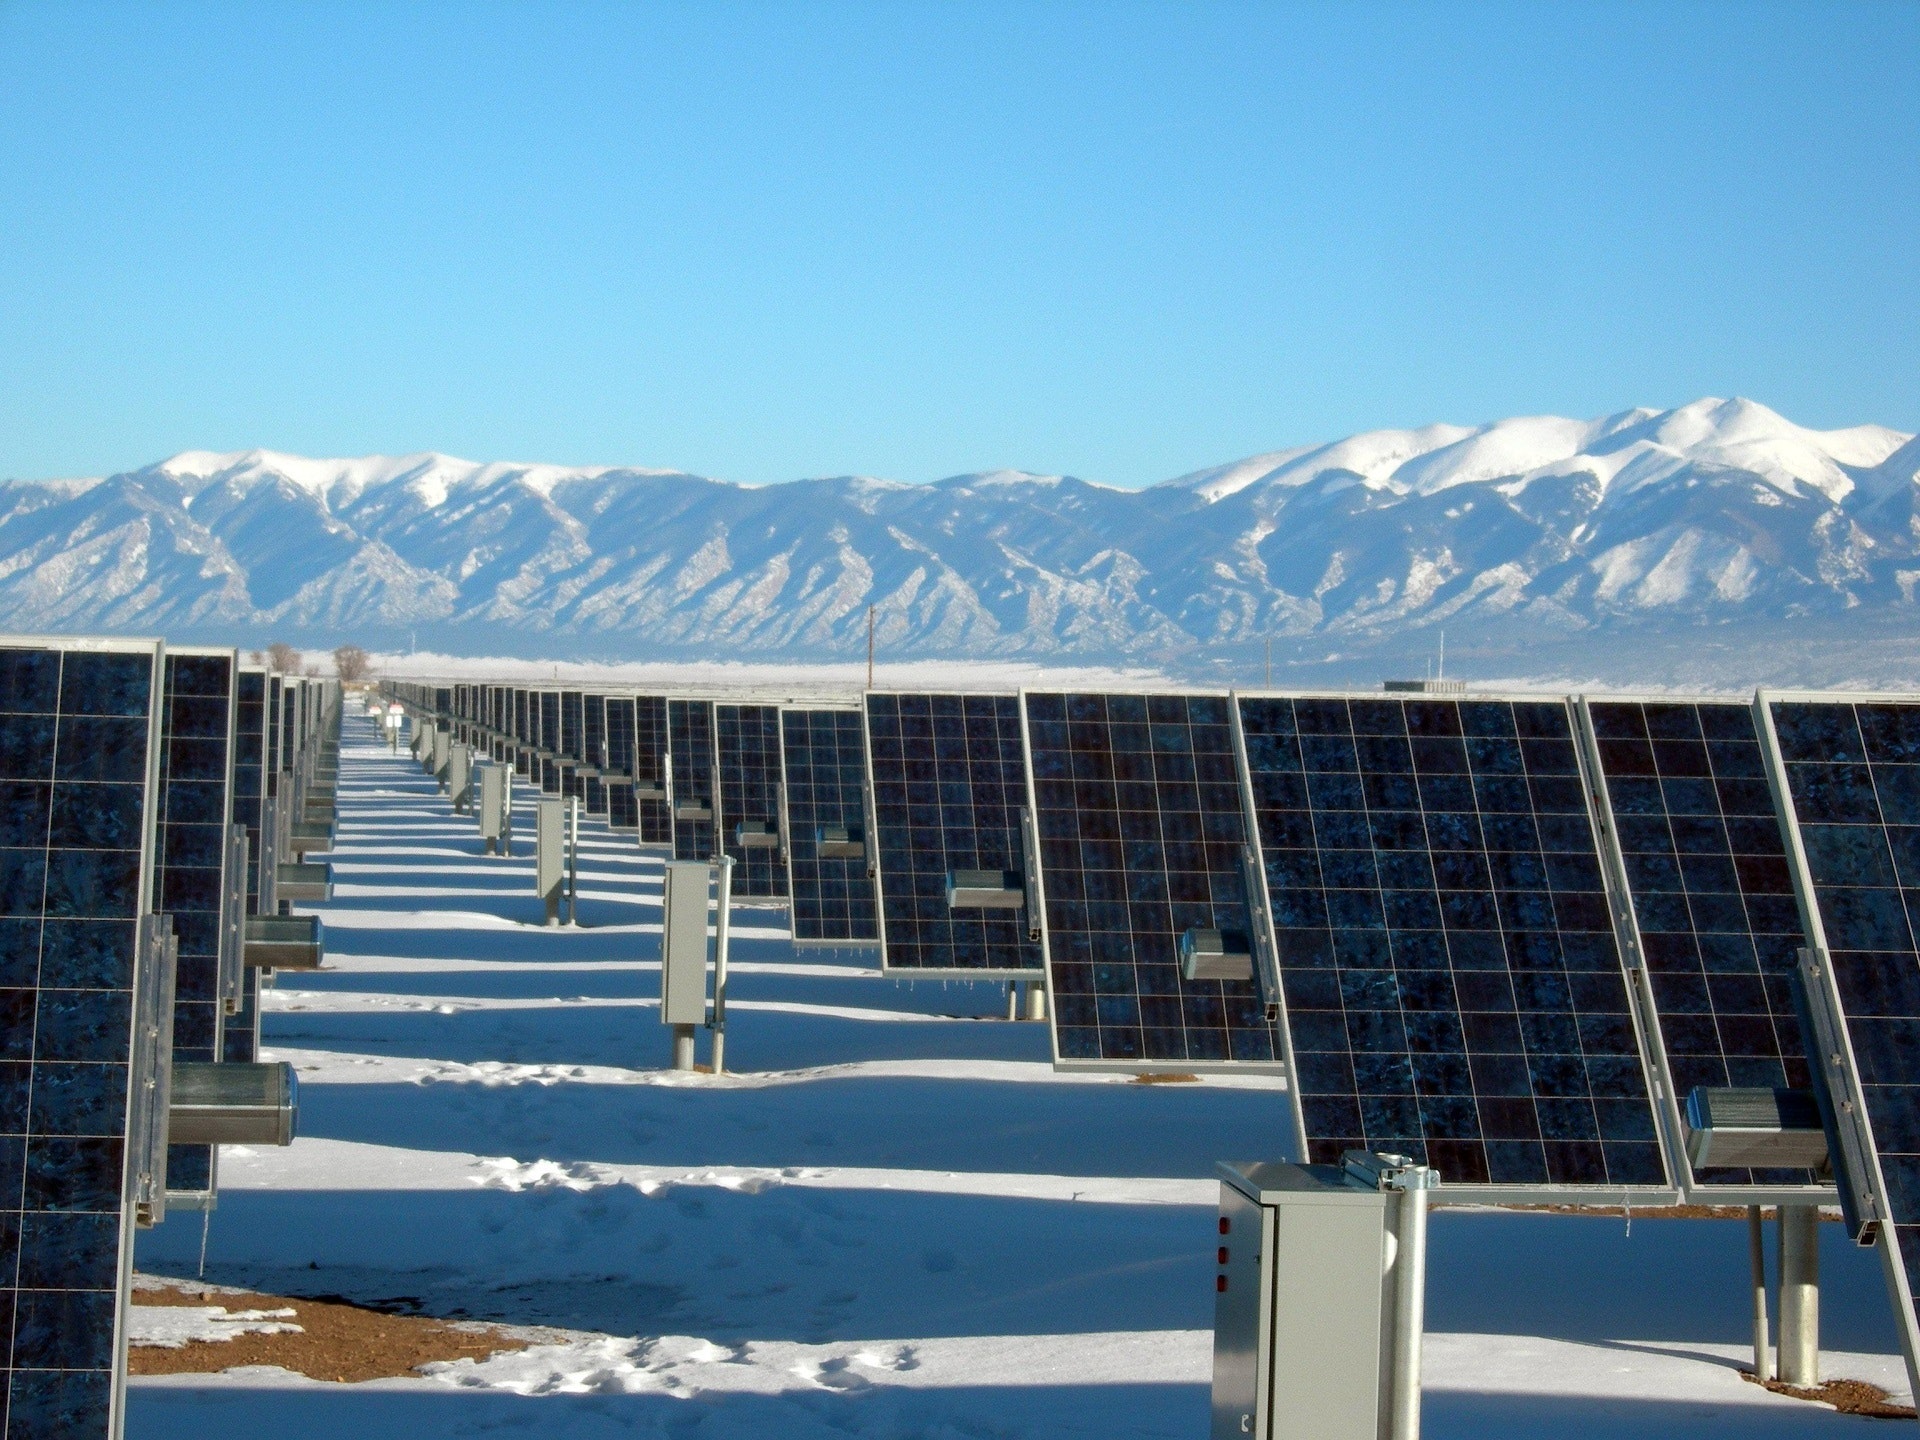 Mitos e Verdades sobre a Geração de Energia Solar no Inverno